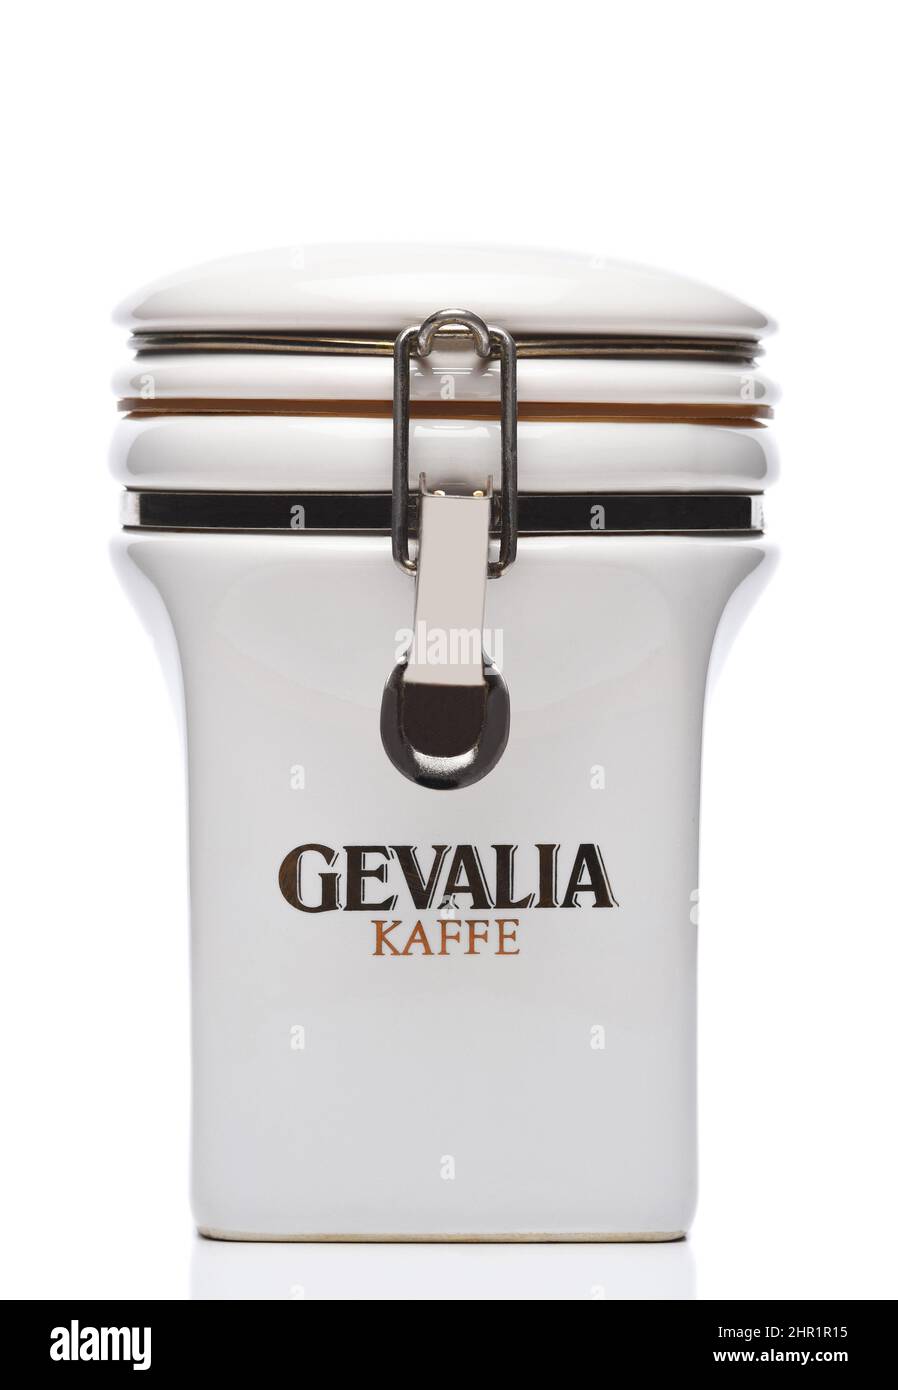 IRVINE, CALIFORNIA - 21 FEB 2022: Gevalia Kaffe barattolo per la conservazione del caffè scandinavo. Foto Stock